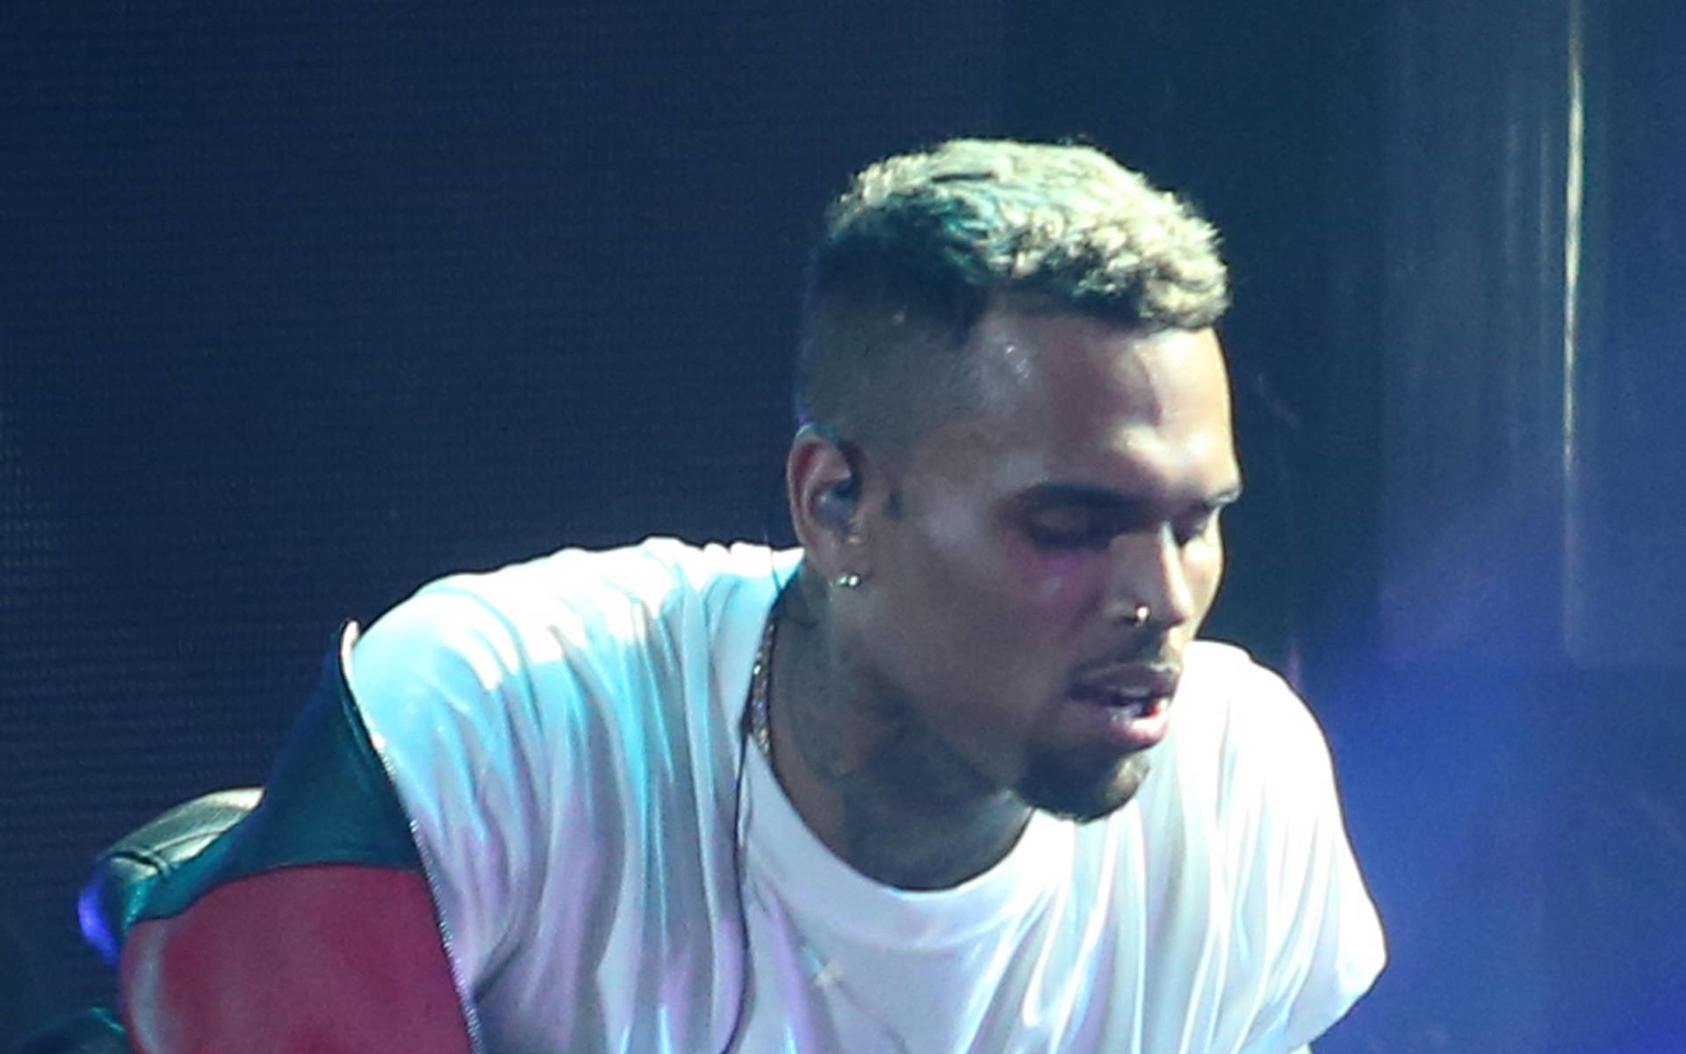 Chris Brown: Klage wegen Nachtclub-Schlägerei fallen gelassen